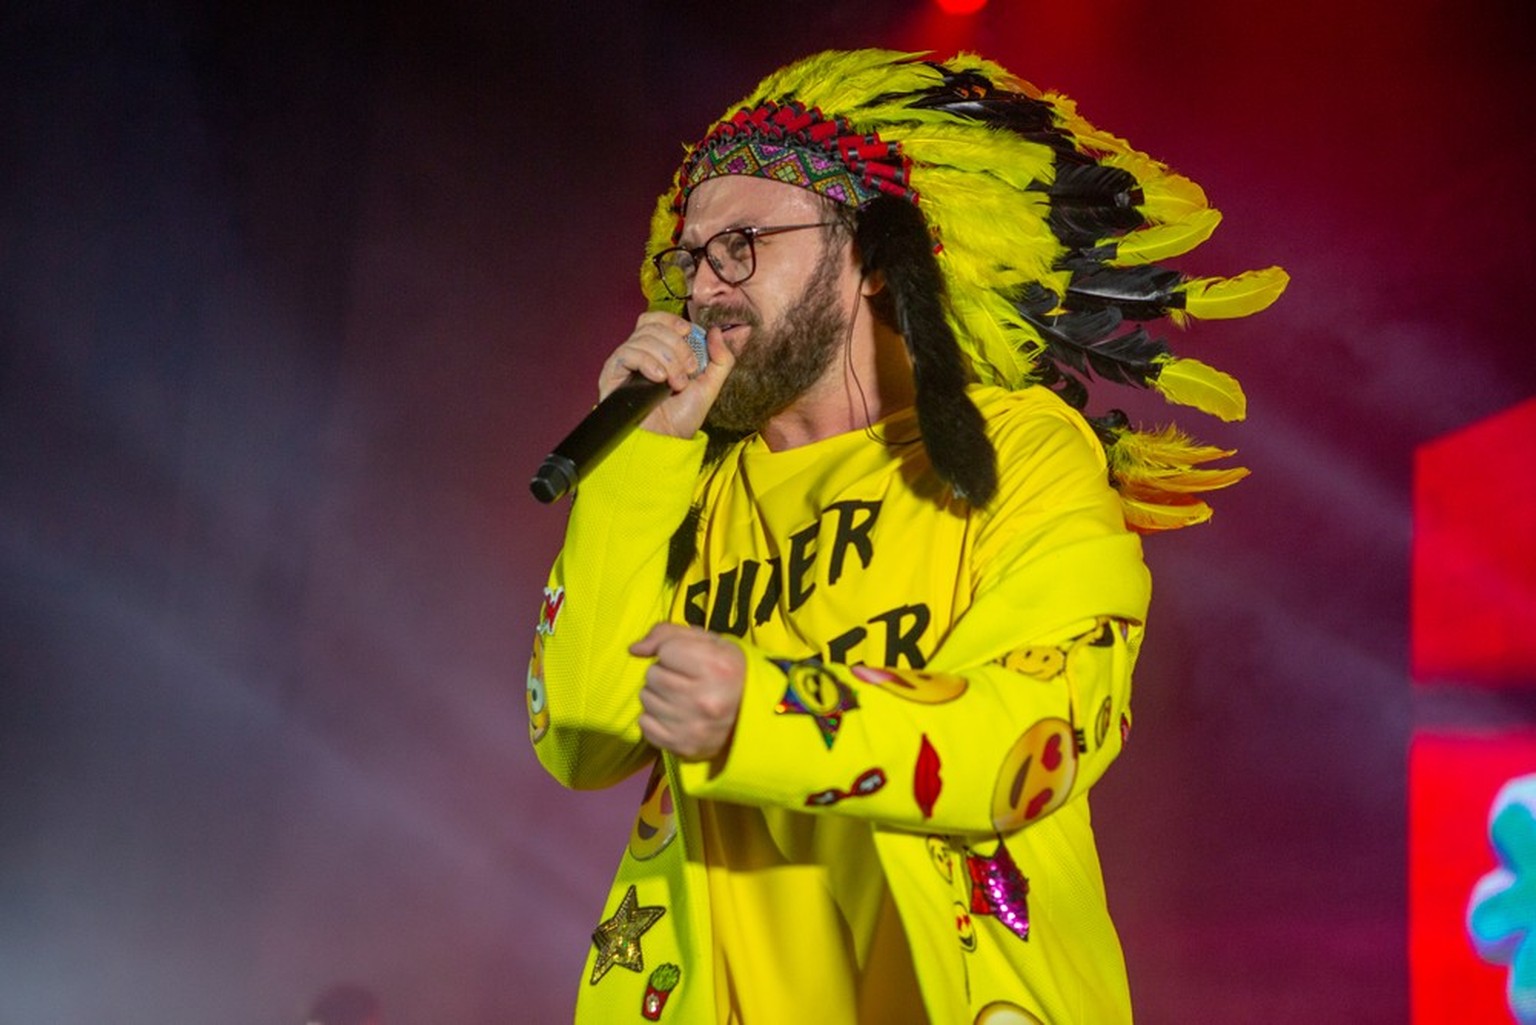 Warbonnet, indianische Federhaube. 
Popular Ukrainian artist Dzidzio on stage during a concert, Odessa, 15. April 2019.